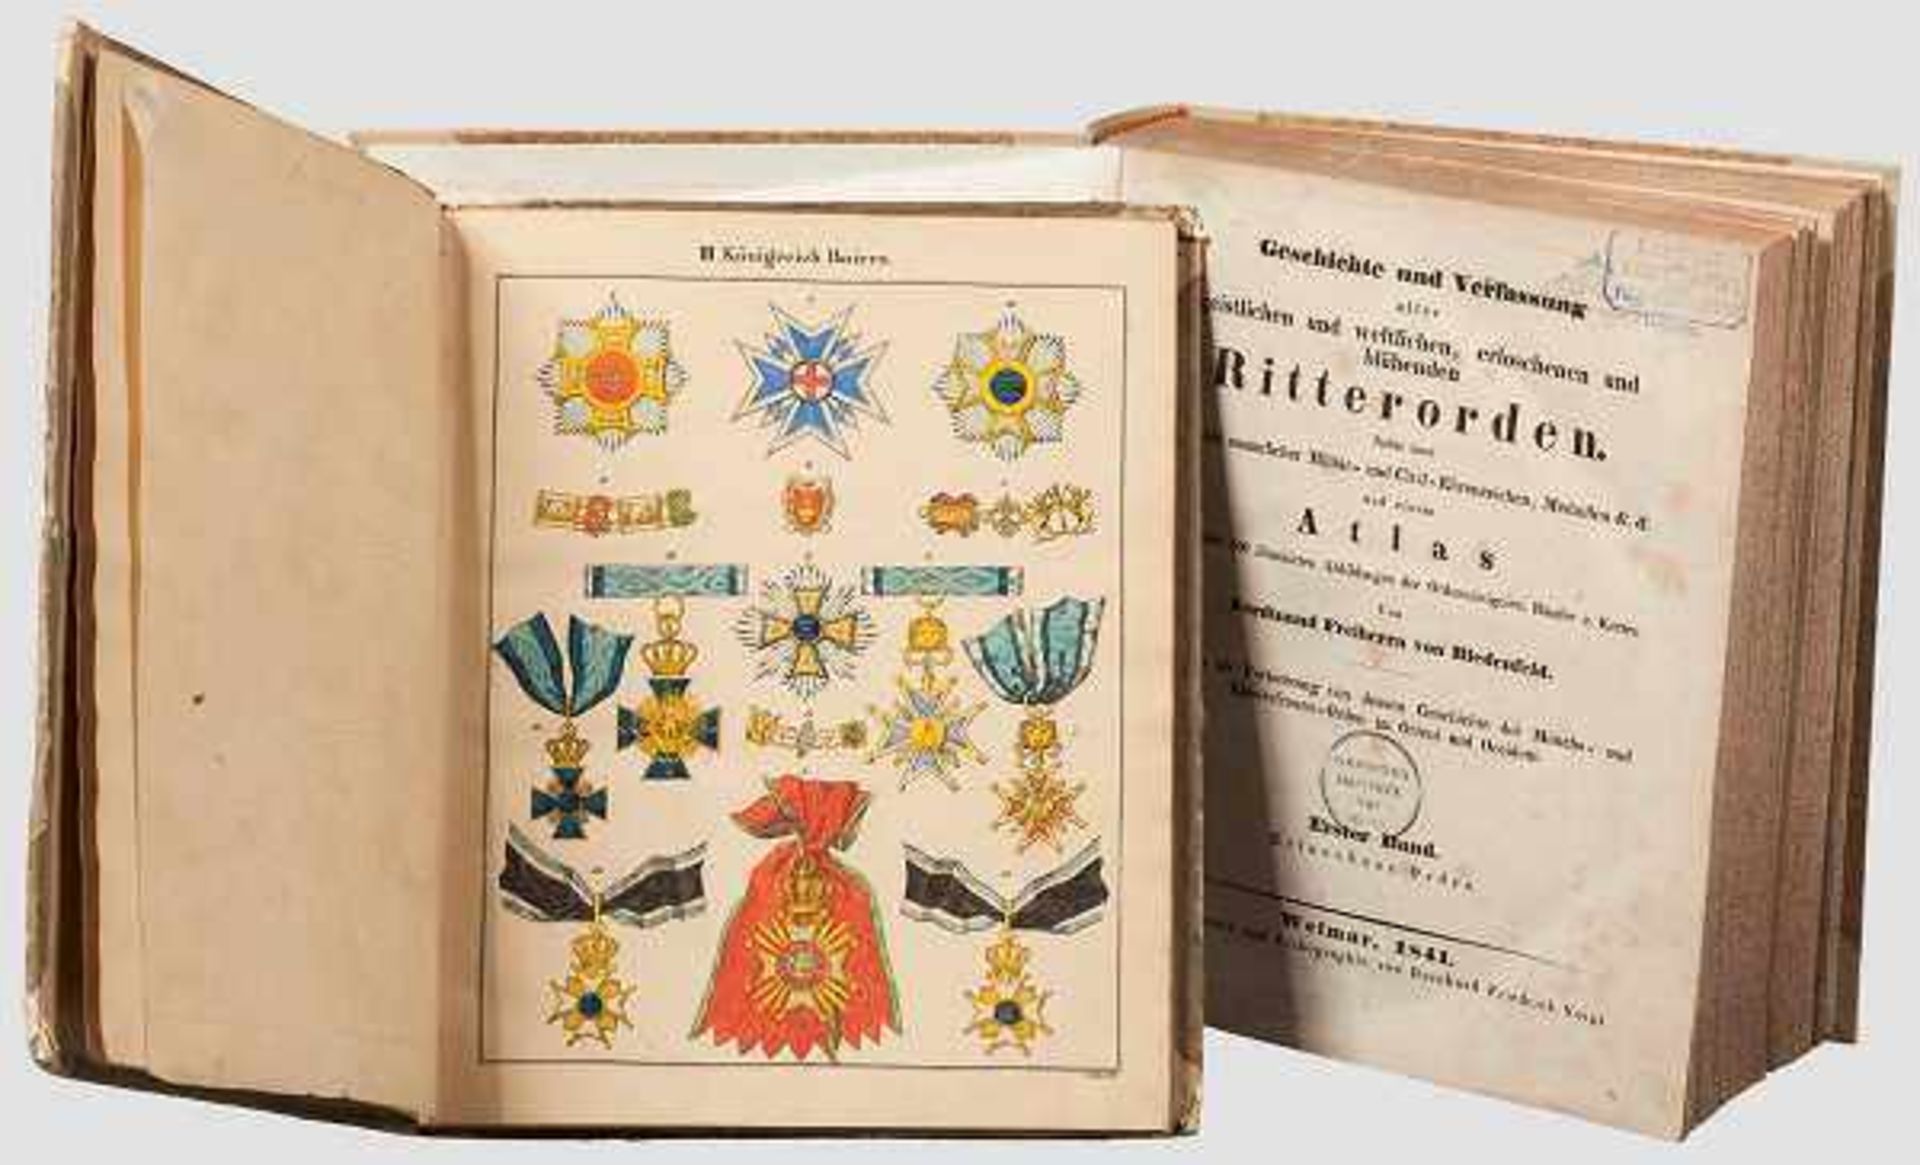 Otto von Griechenland (1815 - 1867) - Ritterorden, Biedenfeld Geschichte und Verfassung aller